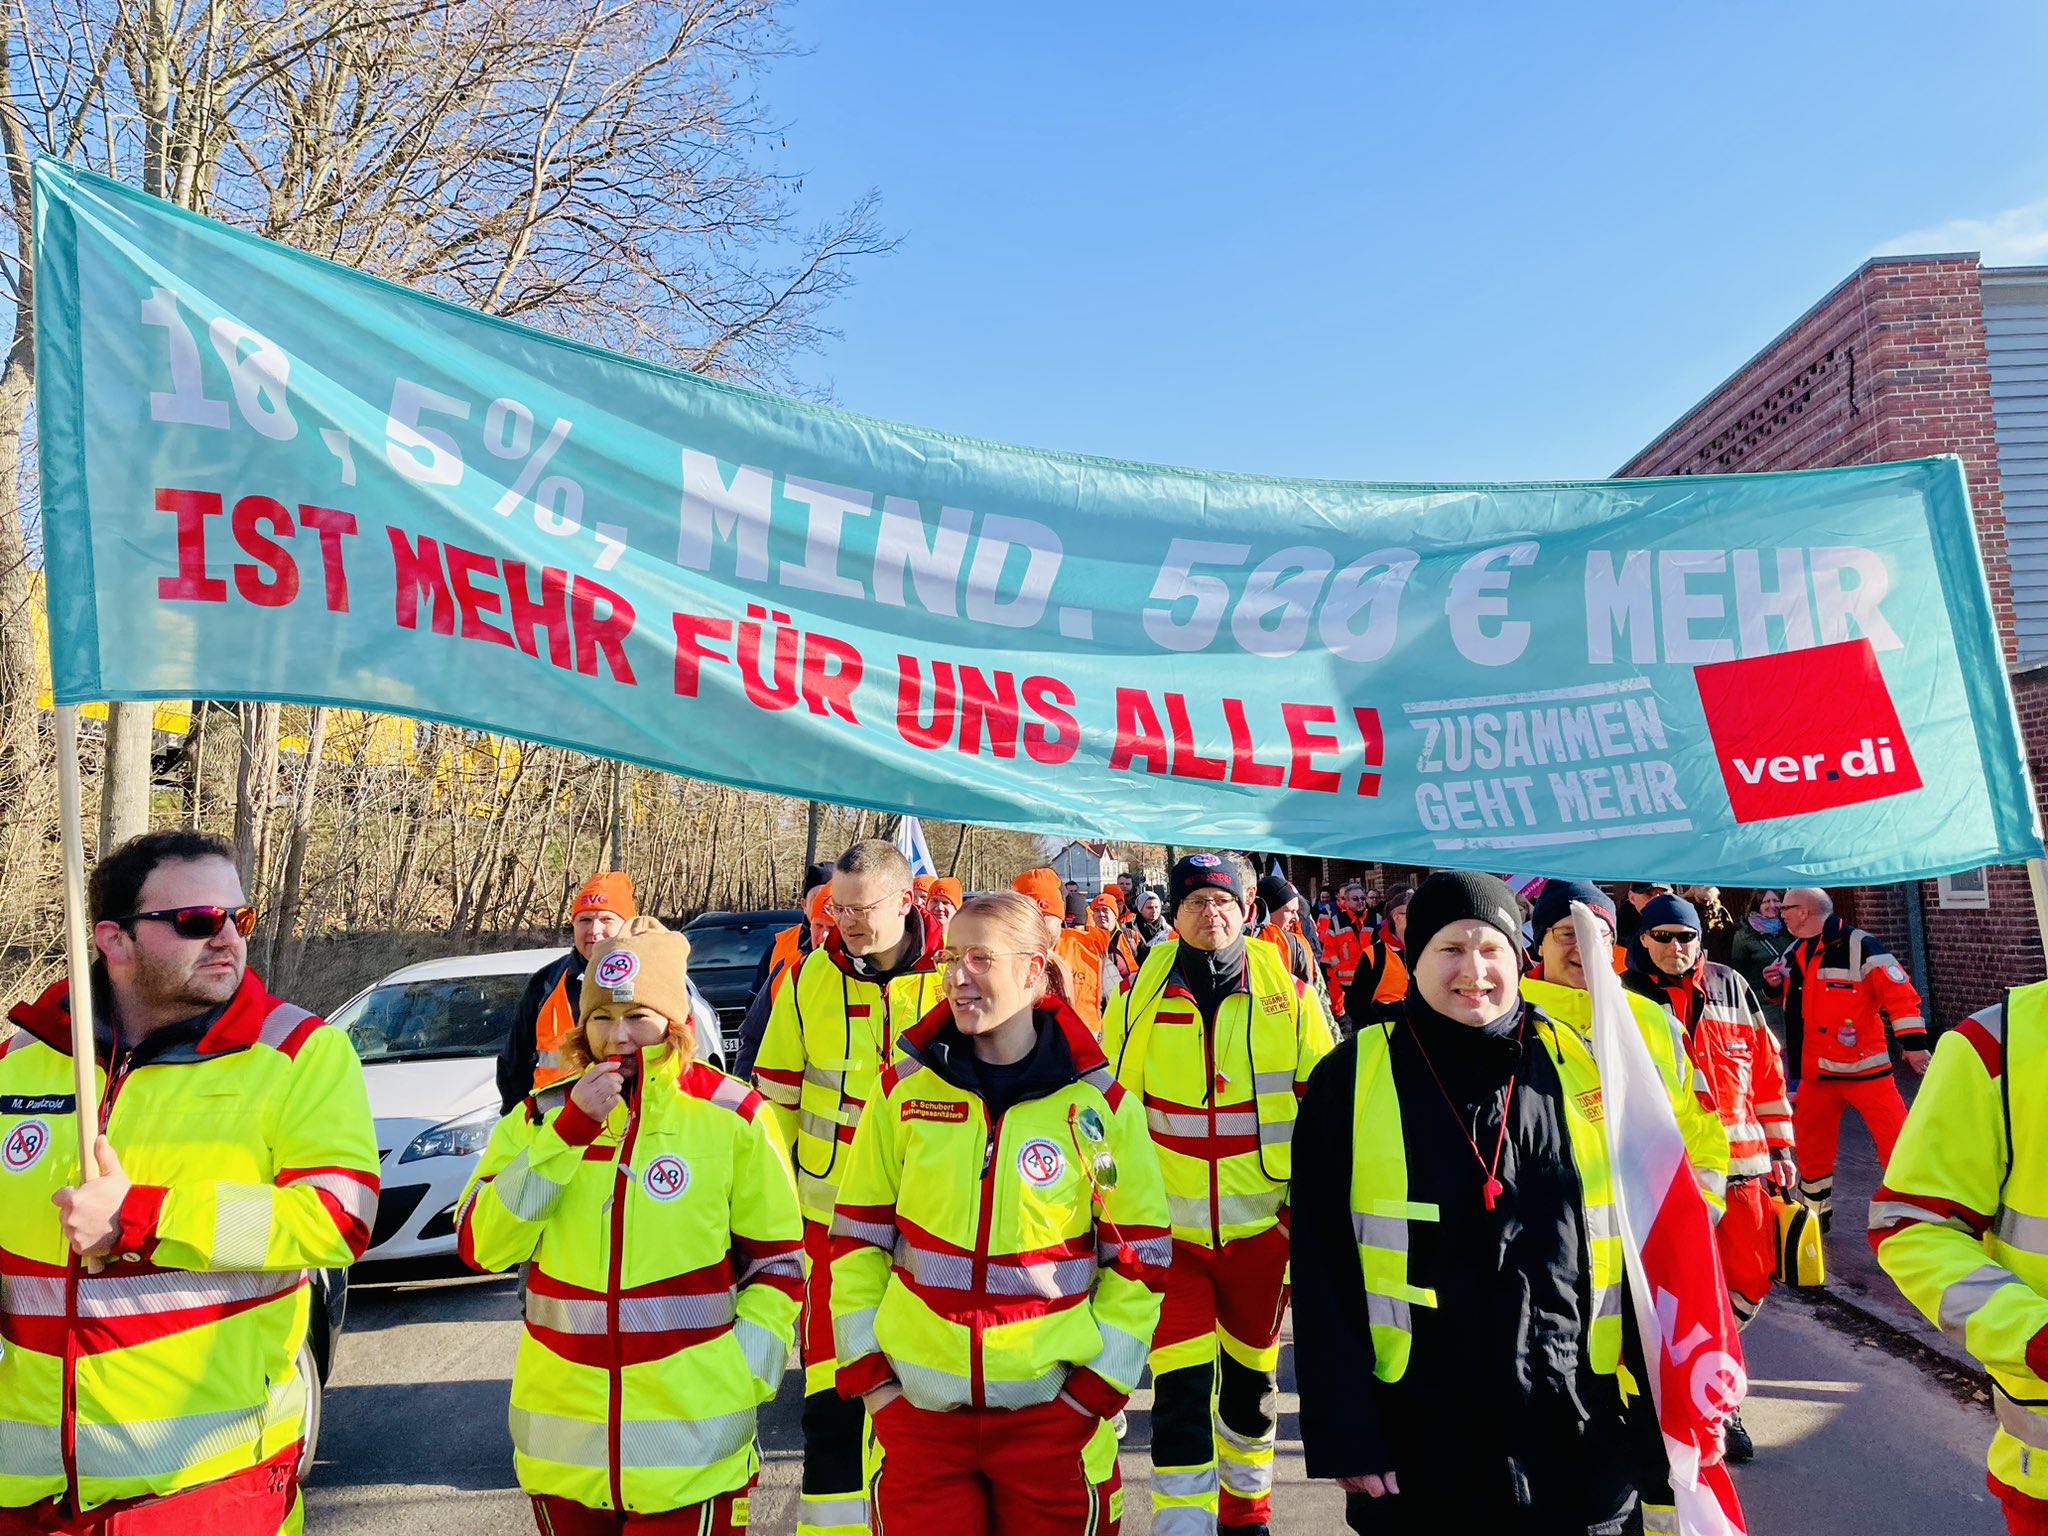 爆炸性的罷工行動激勵了工人階級的戰鬥情緒。//圖片來源：ver.di Westfalen, Twitter